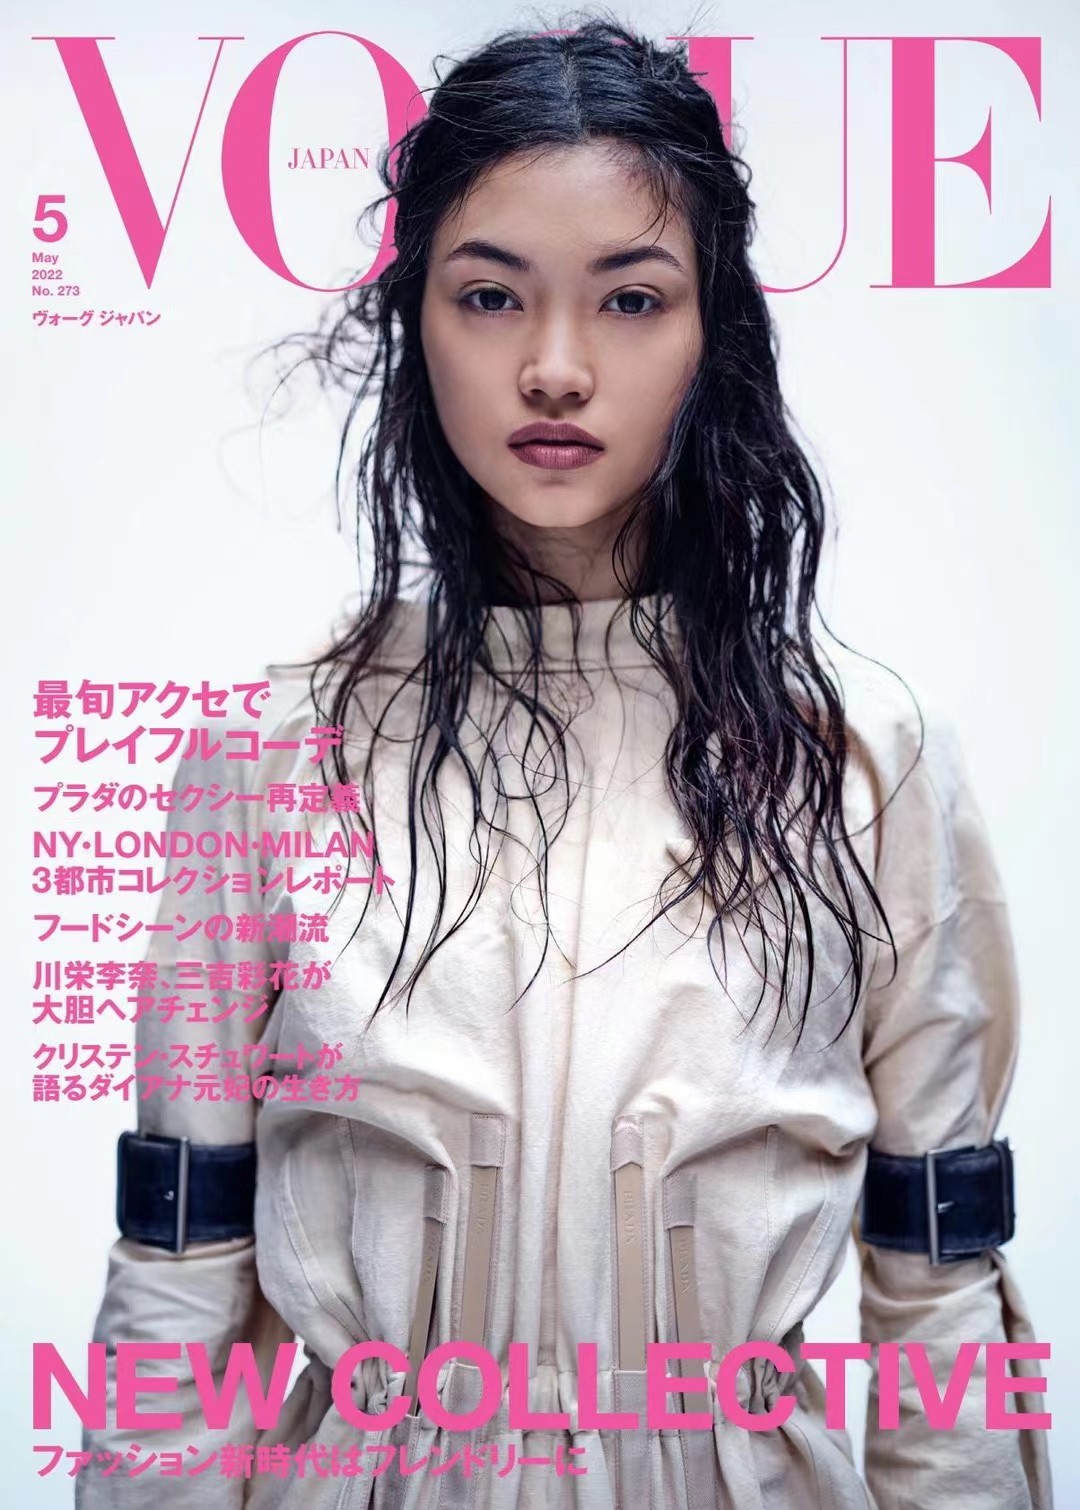 【瑜伽健身上新】 【日本】 033 [日本版]Vogue Japan 时尚杂志 2022年5月刊 电子版